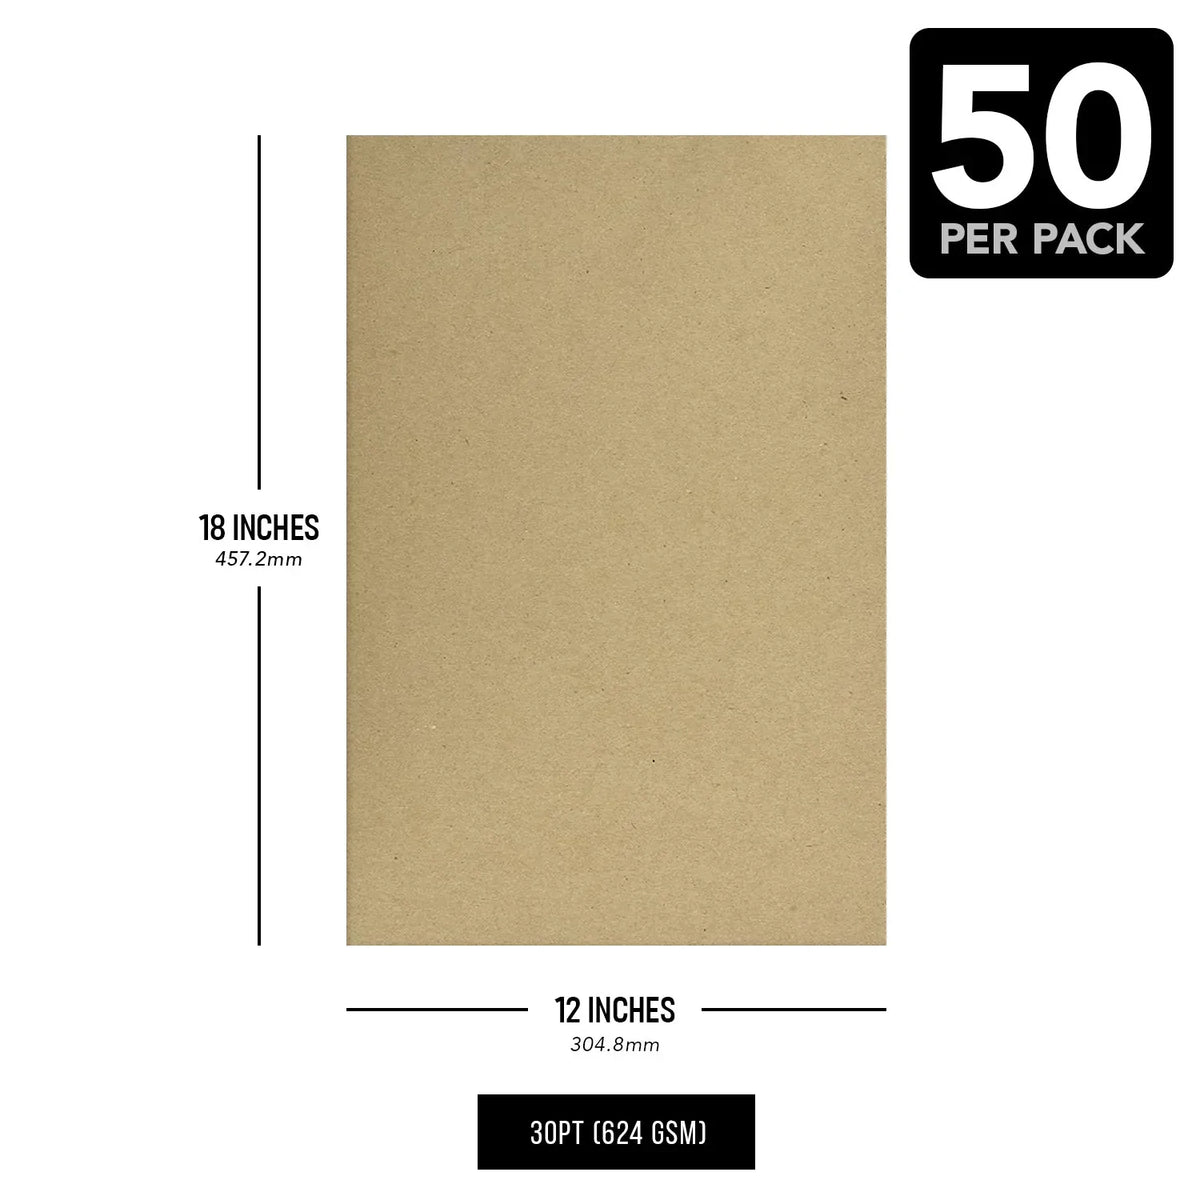 12 x 18" Brown Kraft Chipboard | Medium Weight 30Pt. (624gsm) Cardboard Sheets - 50 per Pack FoldCard